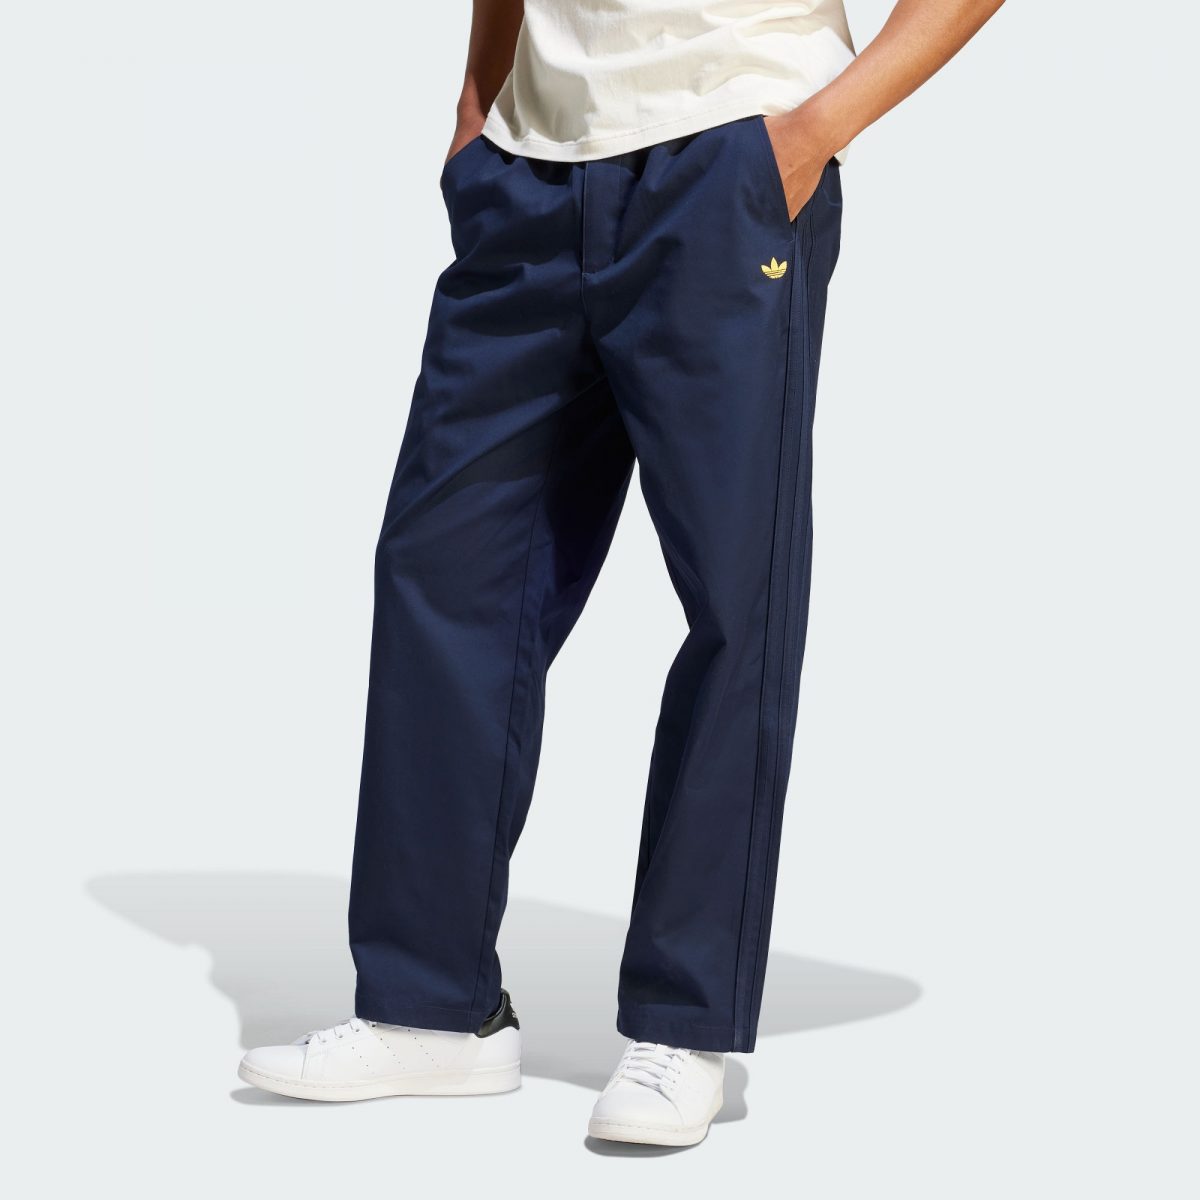 Мужские брюки adidas NICE CHINO PANTS фото